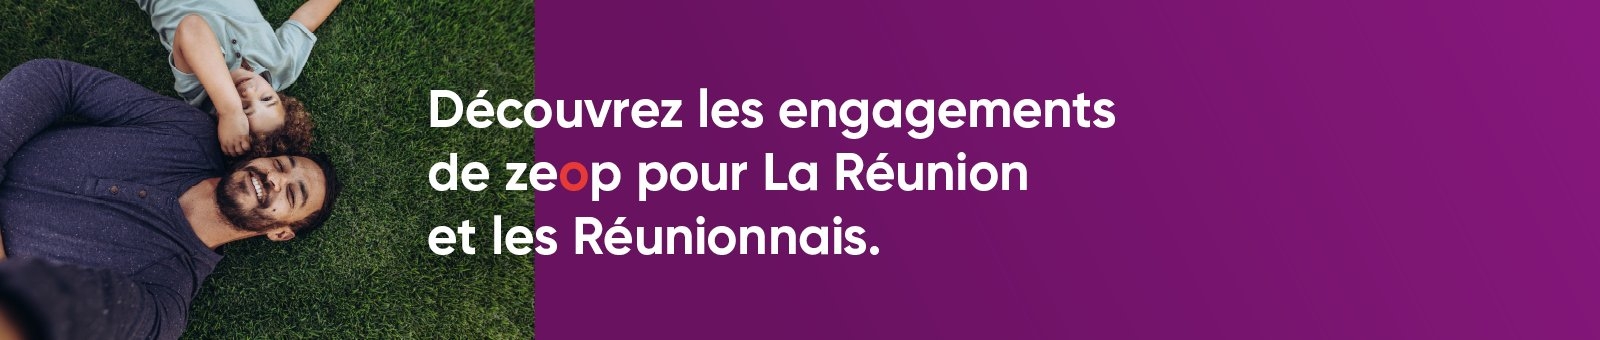 zeop s'engage pour La Réunion & les Réunionnais.